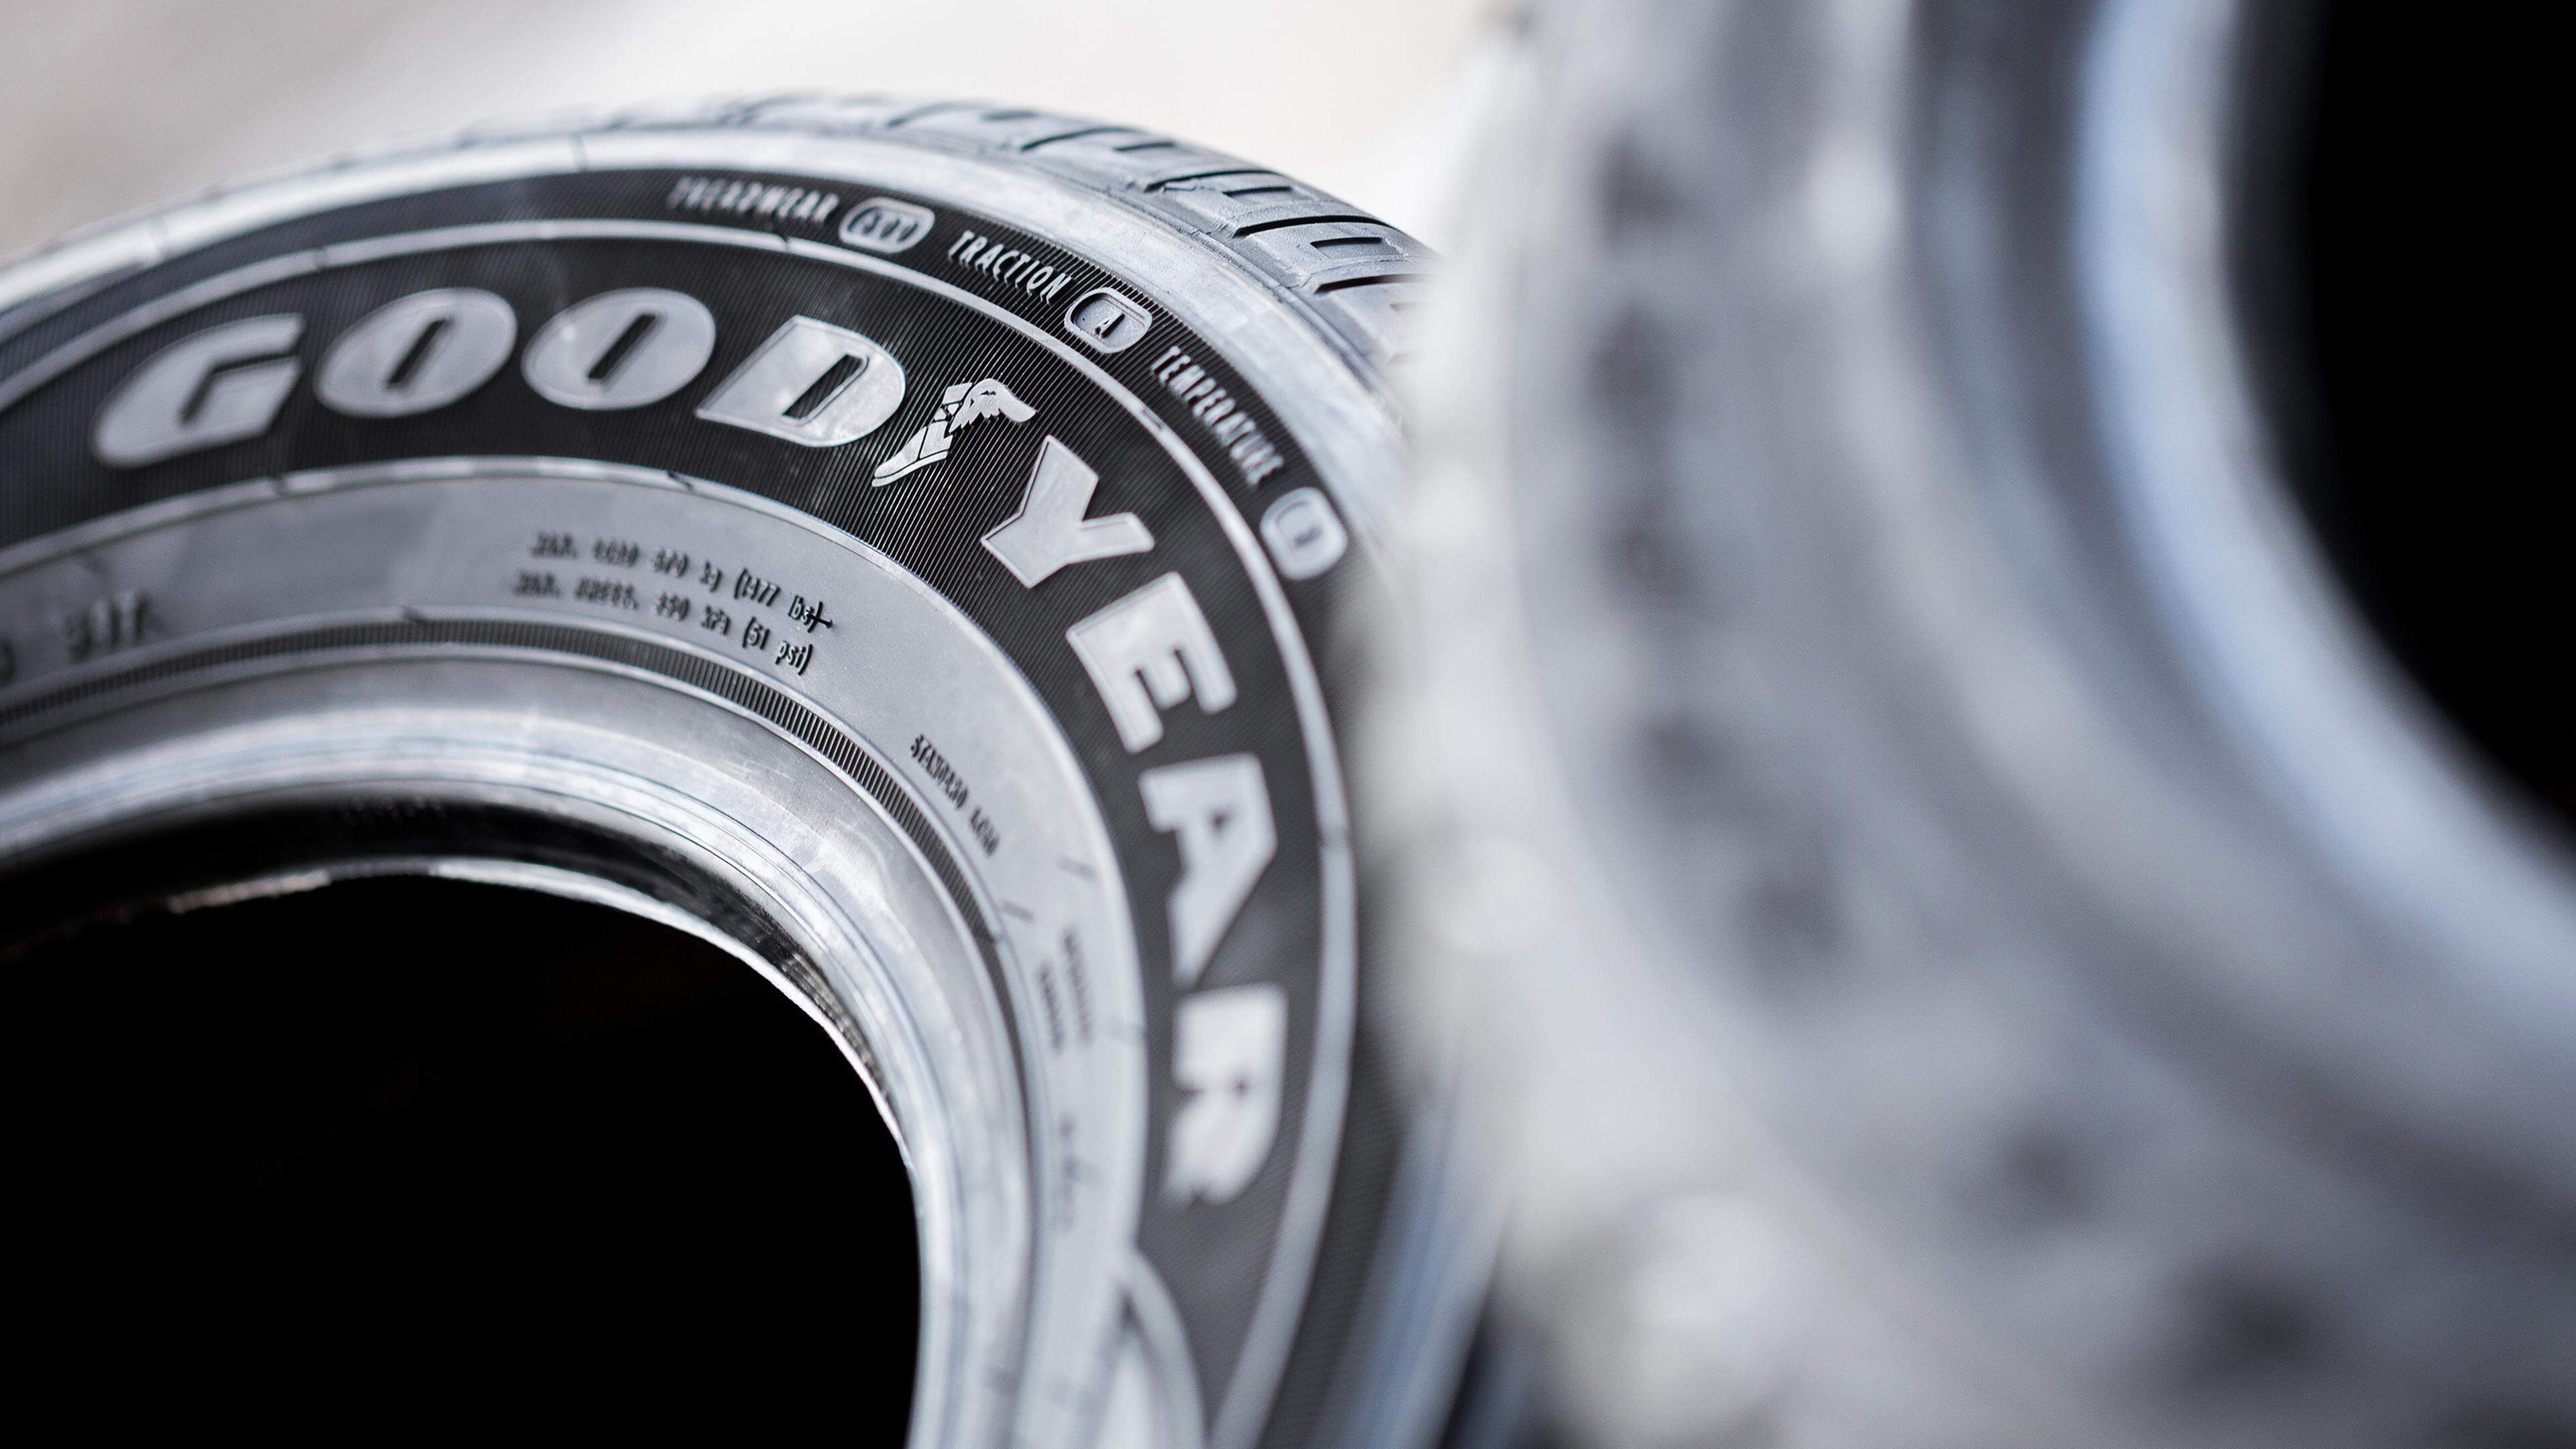 Goodyear wird vorgeworfen, von einem Defekt an seinen Reifen gewusst zu haben, aber keine Rückrufkampagne durchgeführt zu haben.